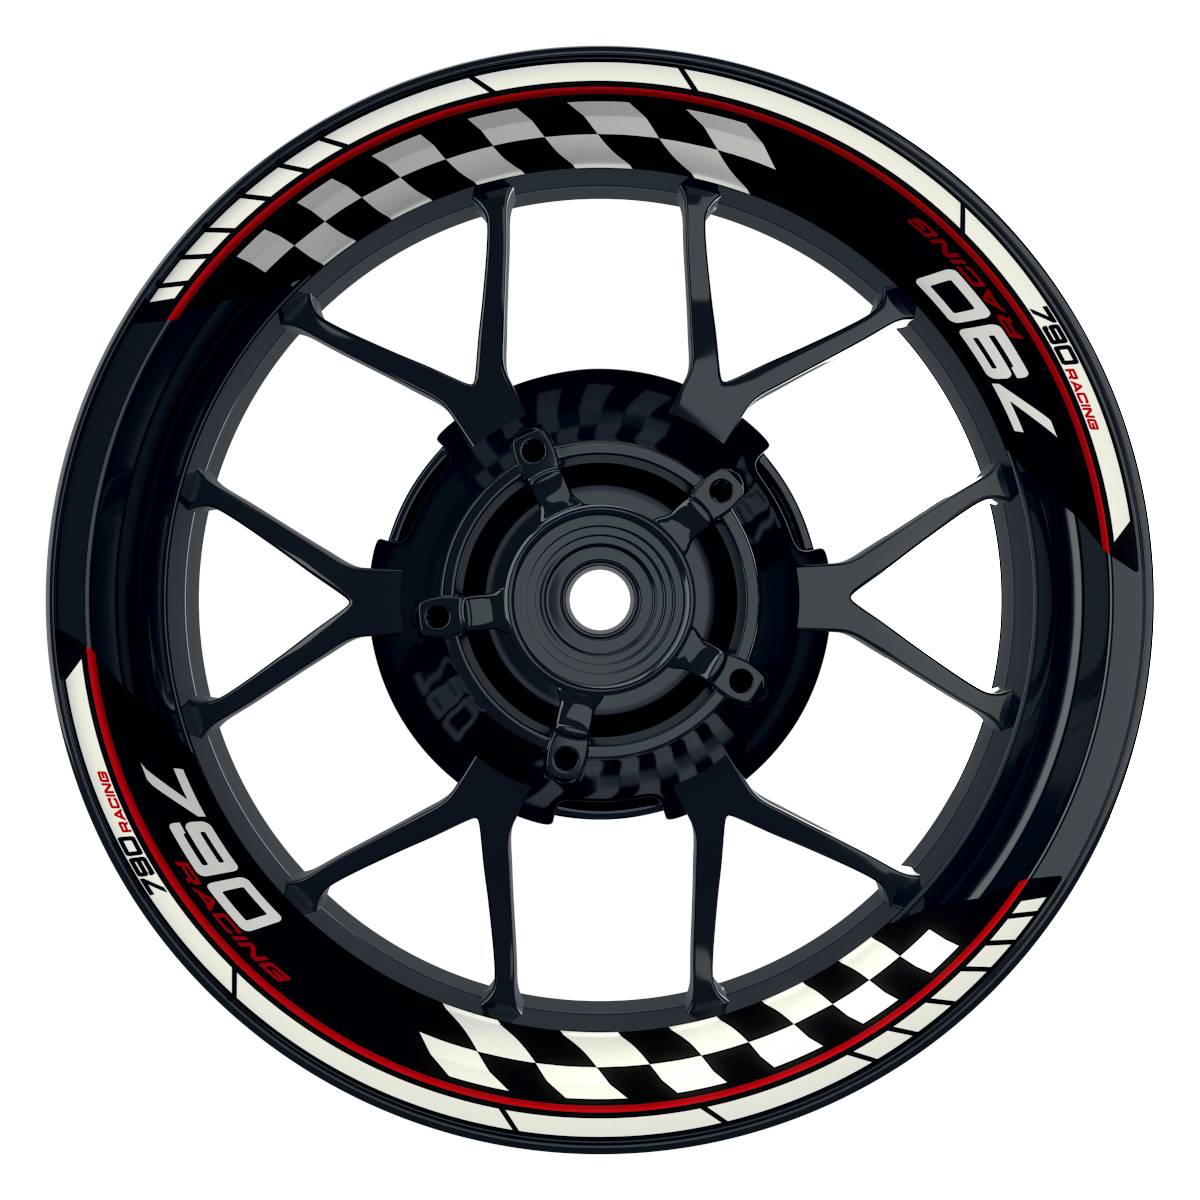 KTM Racing 790 Grid schwarz rot Frontansicht